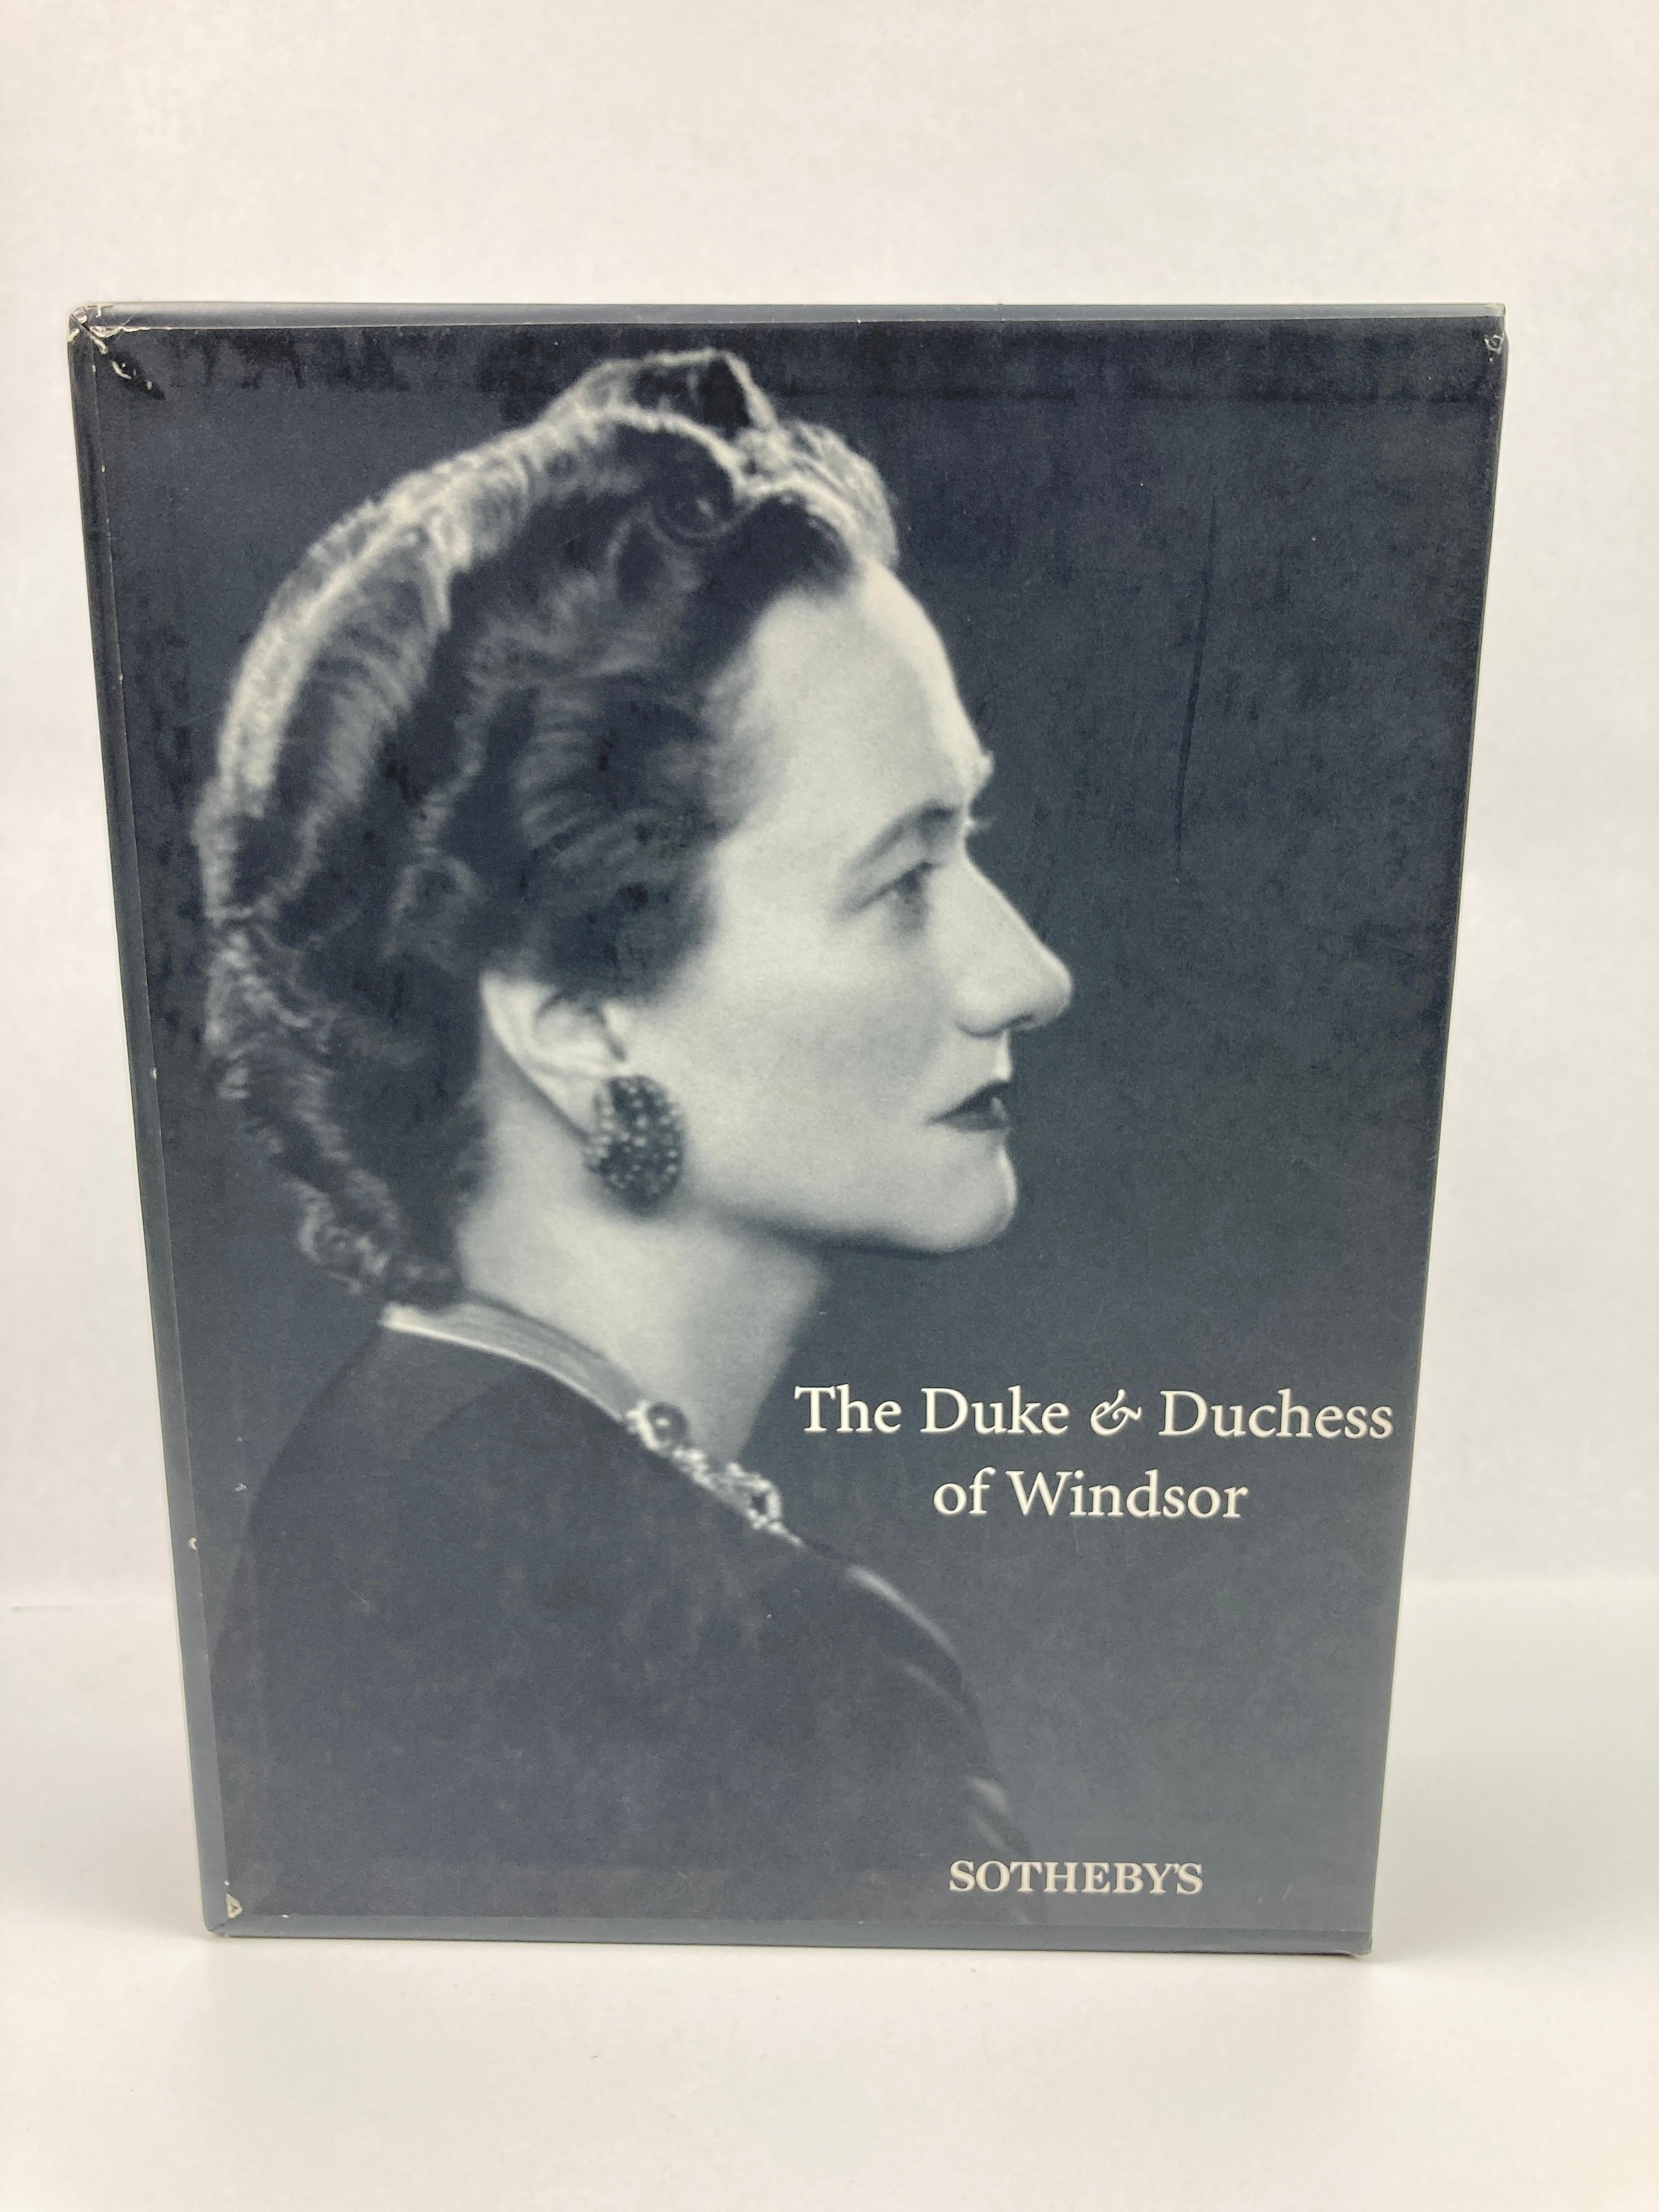 The Duke and Duchess of Windsor Auction Sotheby's Books Catalogs in Slipcase Box (Le duc et la duchesse de Windsor, ventes aux enchères, catalogues de livres de Sotheby's dans une boîte) en vente 3